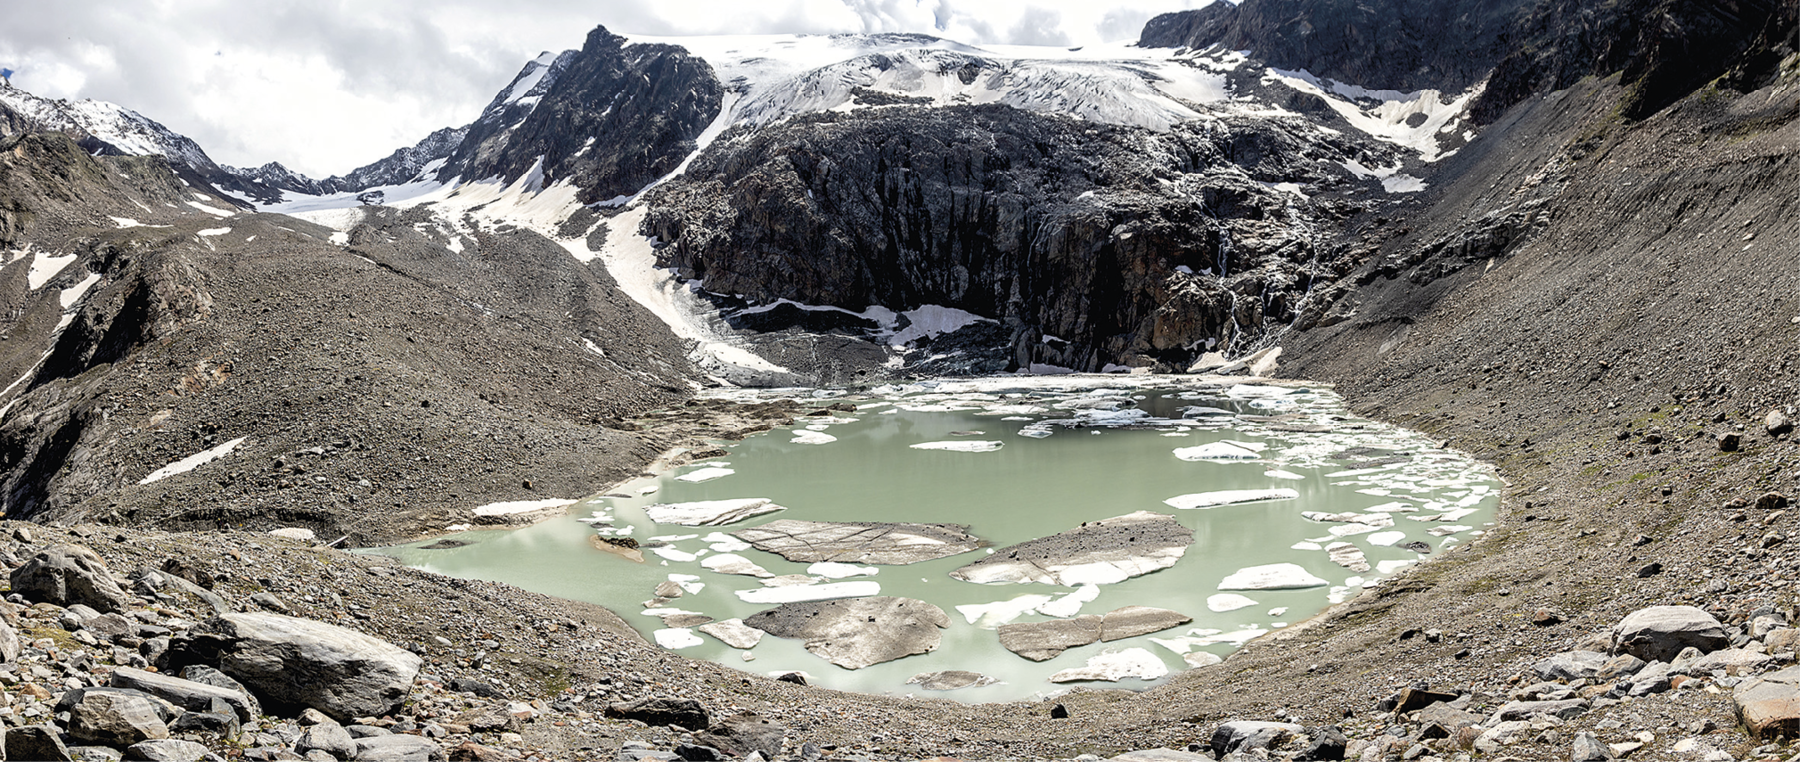 Fotografia. Vista de um lago congelado com blocos de gelo na superfície da água. Ao redor há uma rocha e terras em tons escuros. Ao fundo, um terrenos bastante elevado com neve no topo.